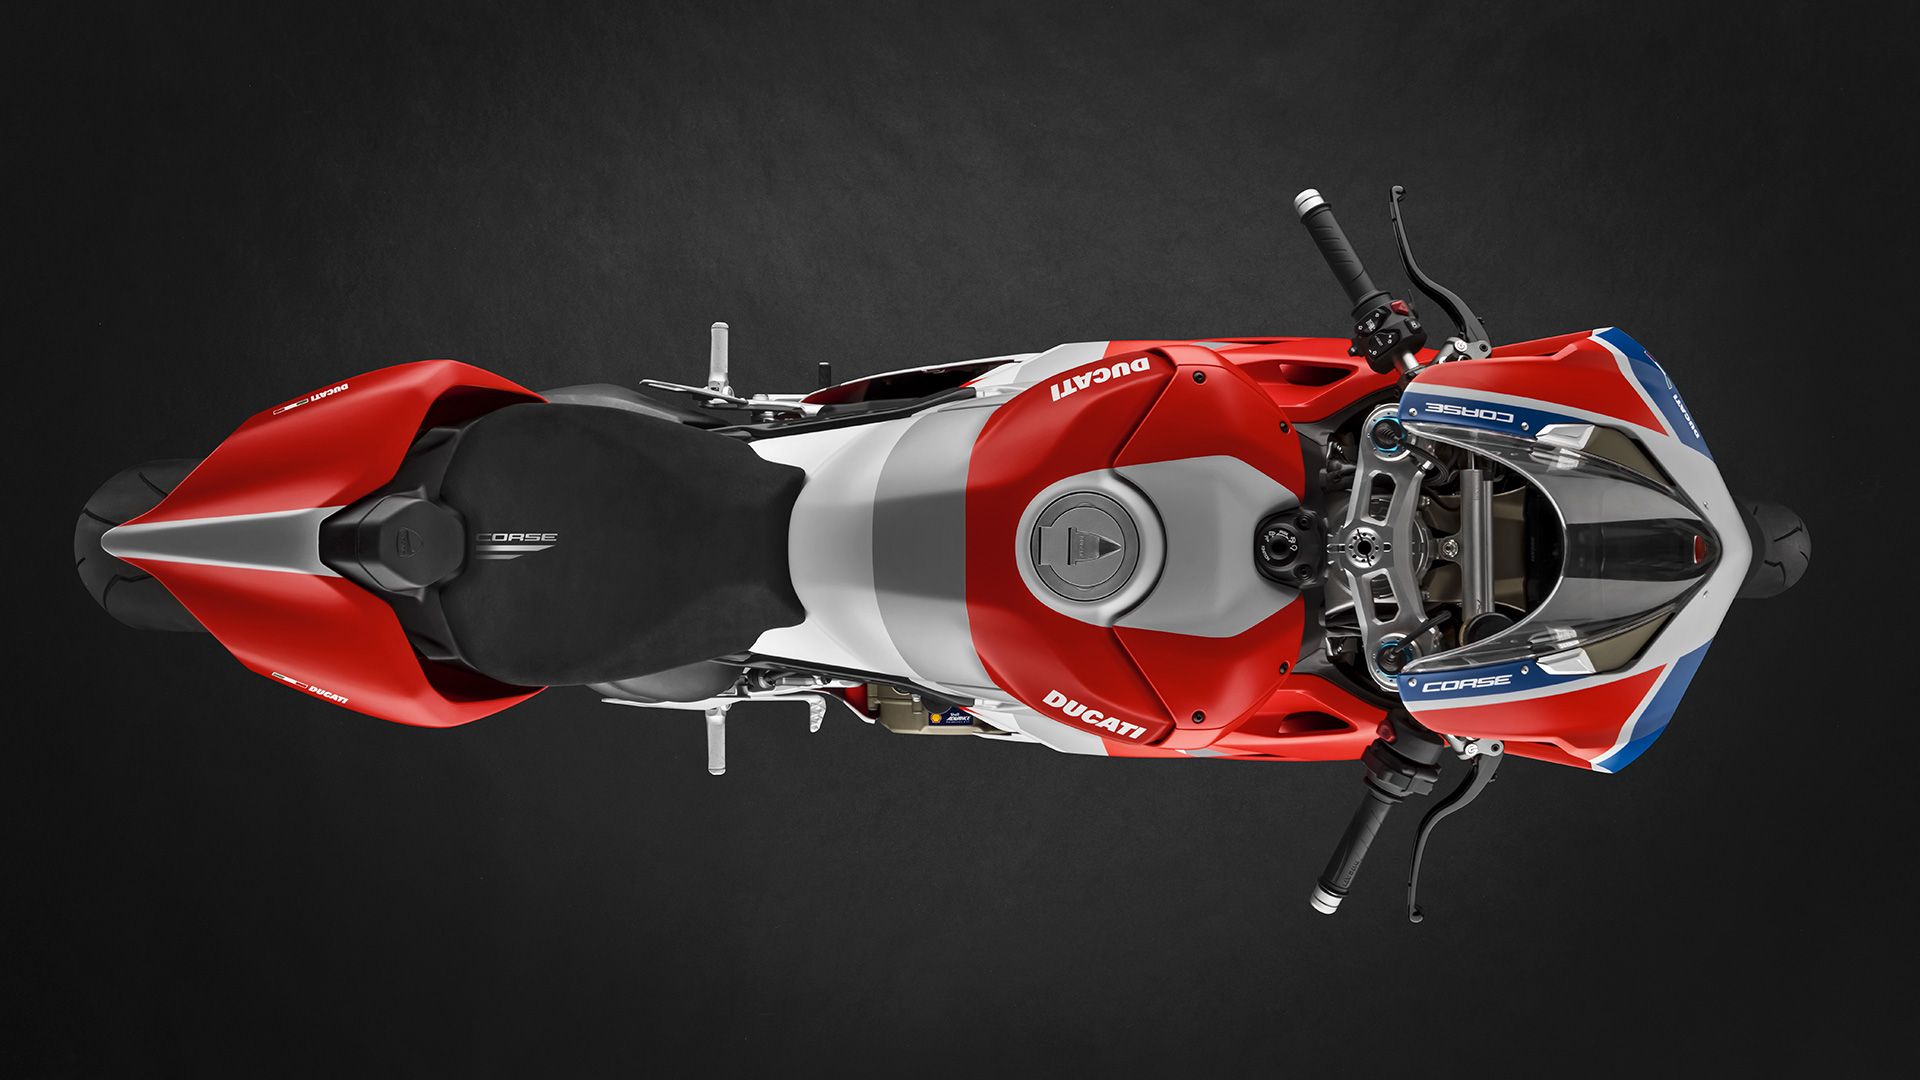 2019 Ducati Panigale V4 S Corse